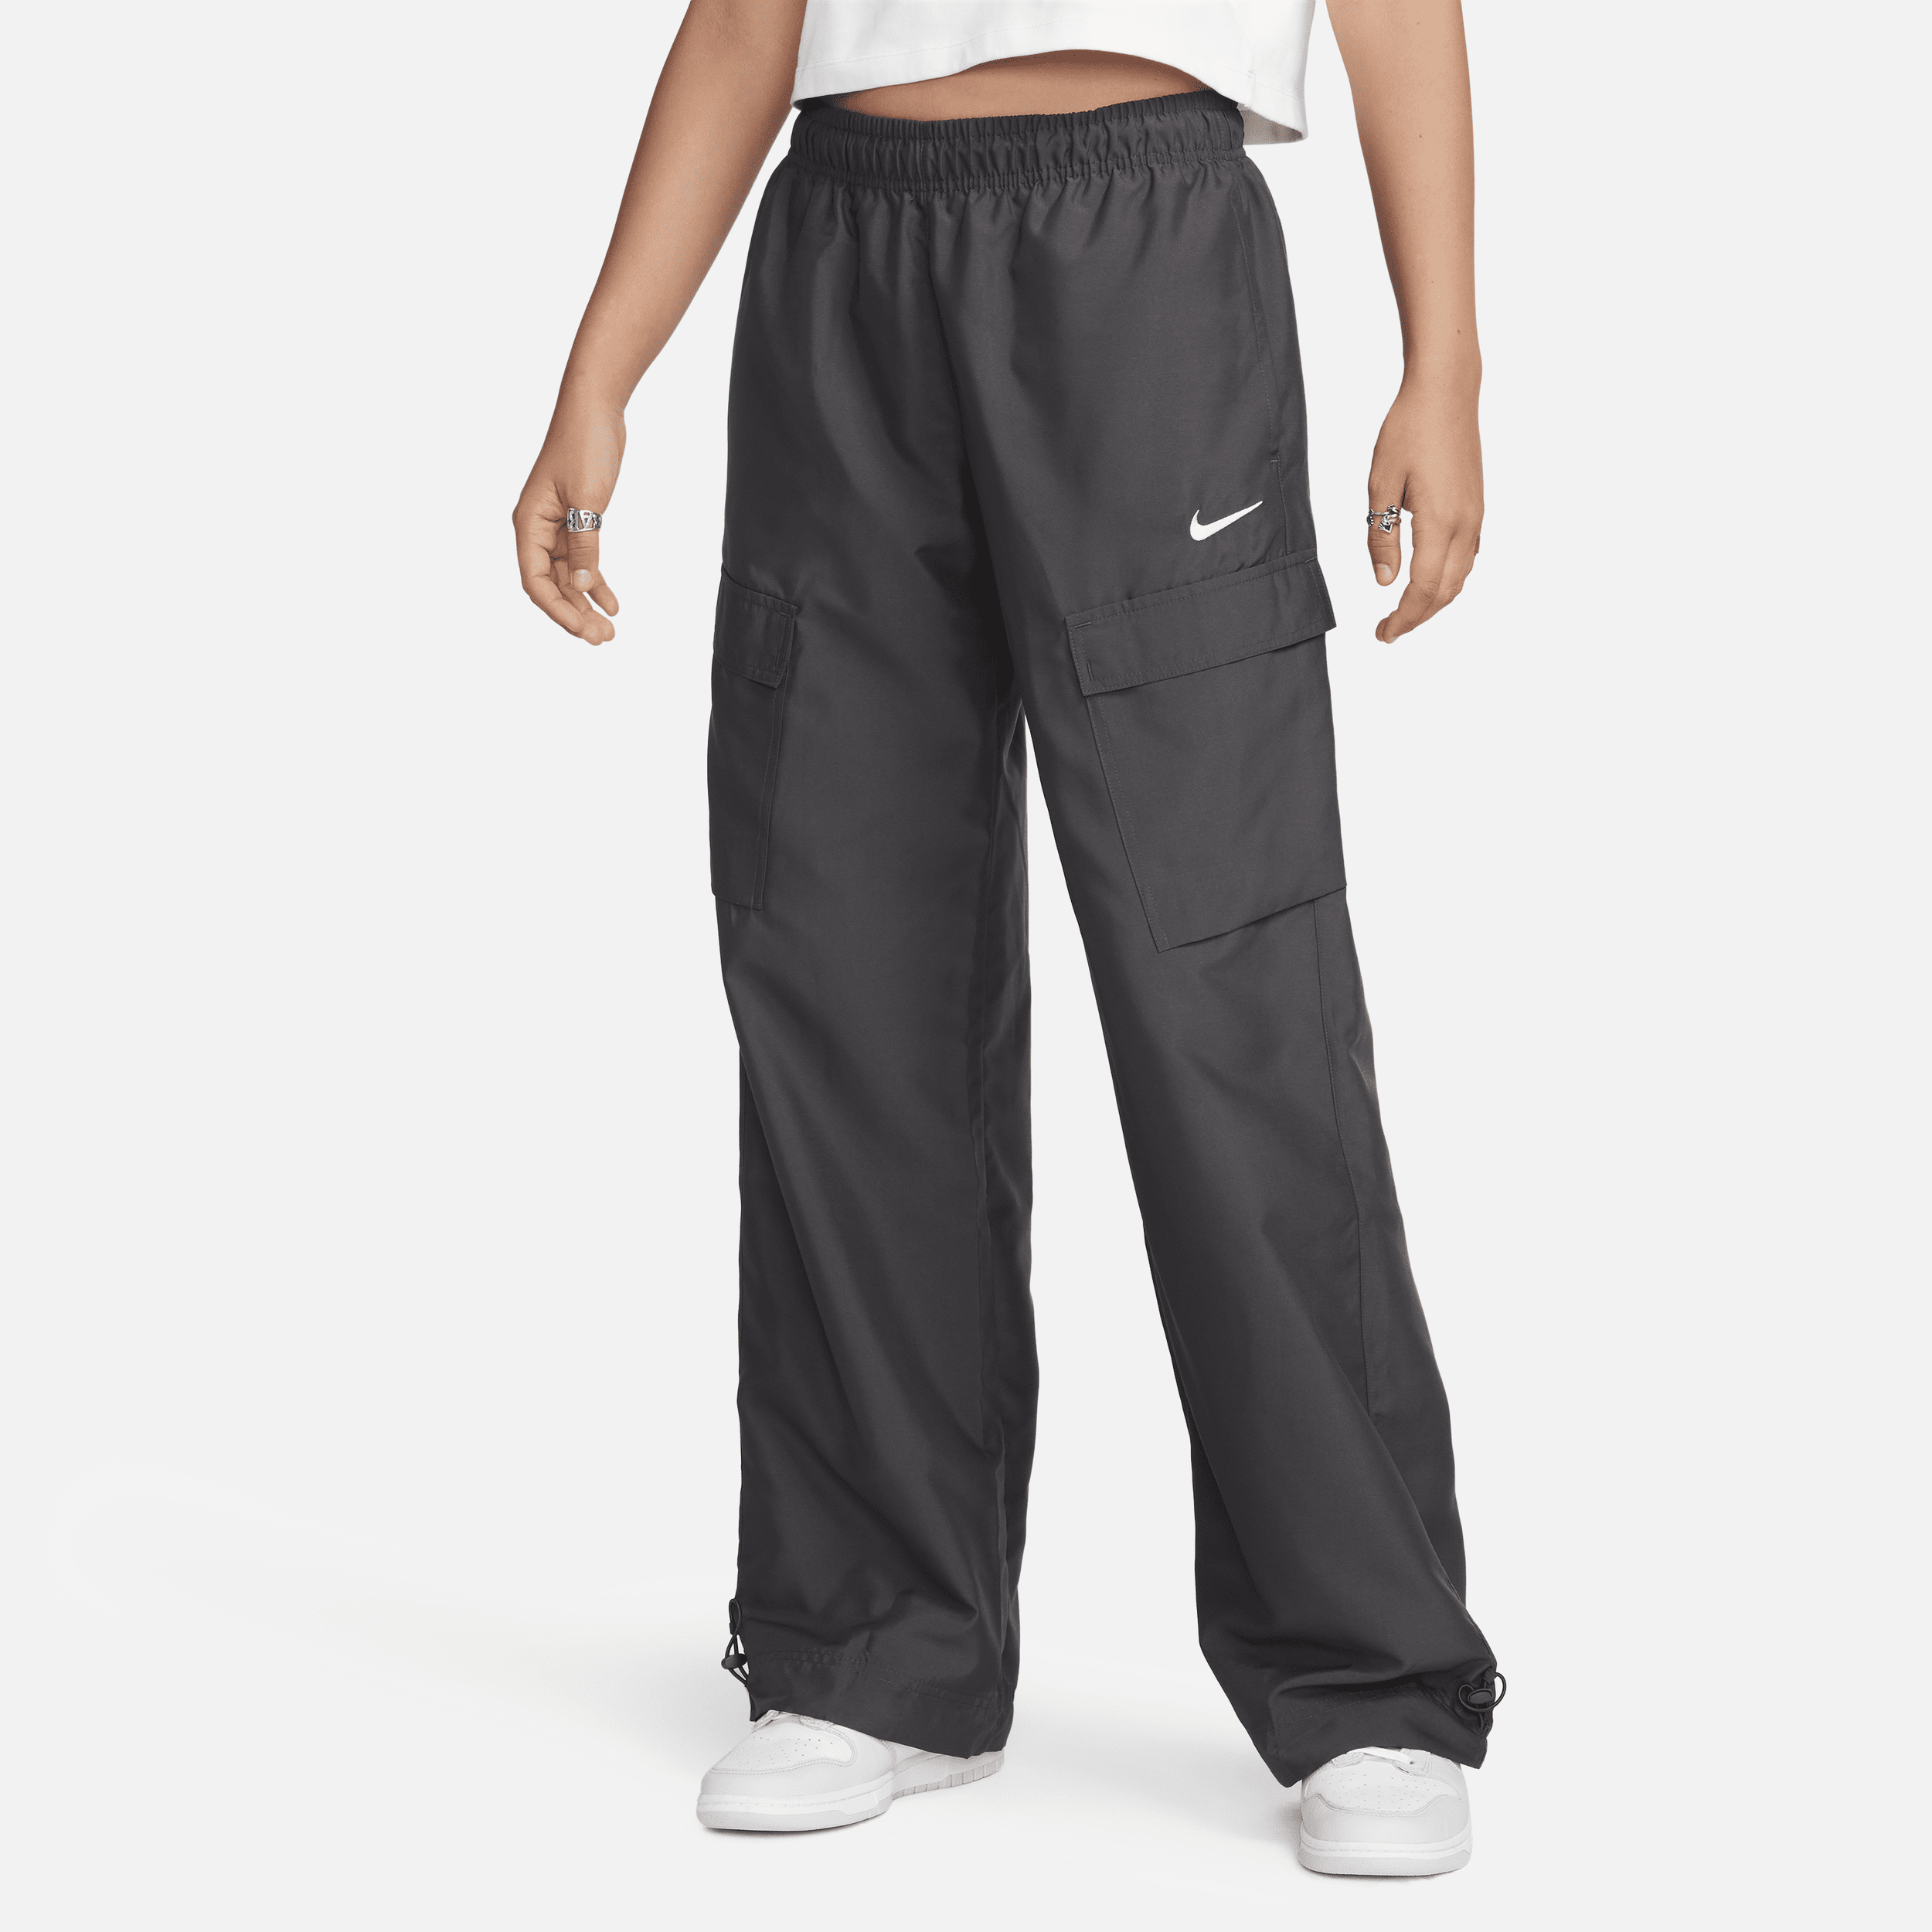 Vævede Nike Sportswear-cargo-bukser til kvinder - grå